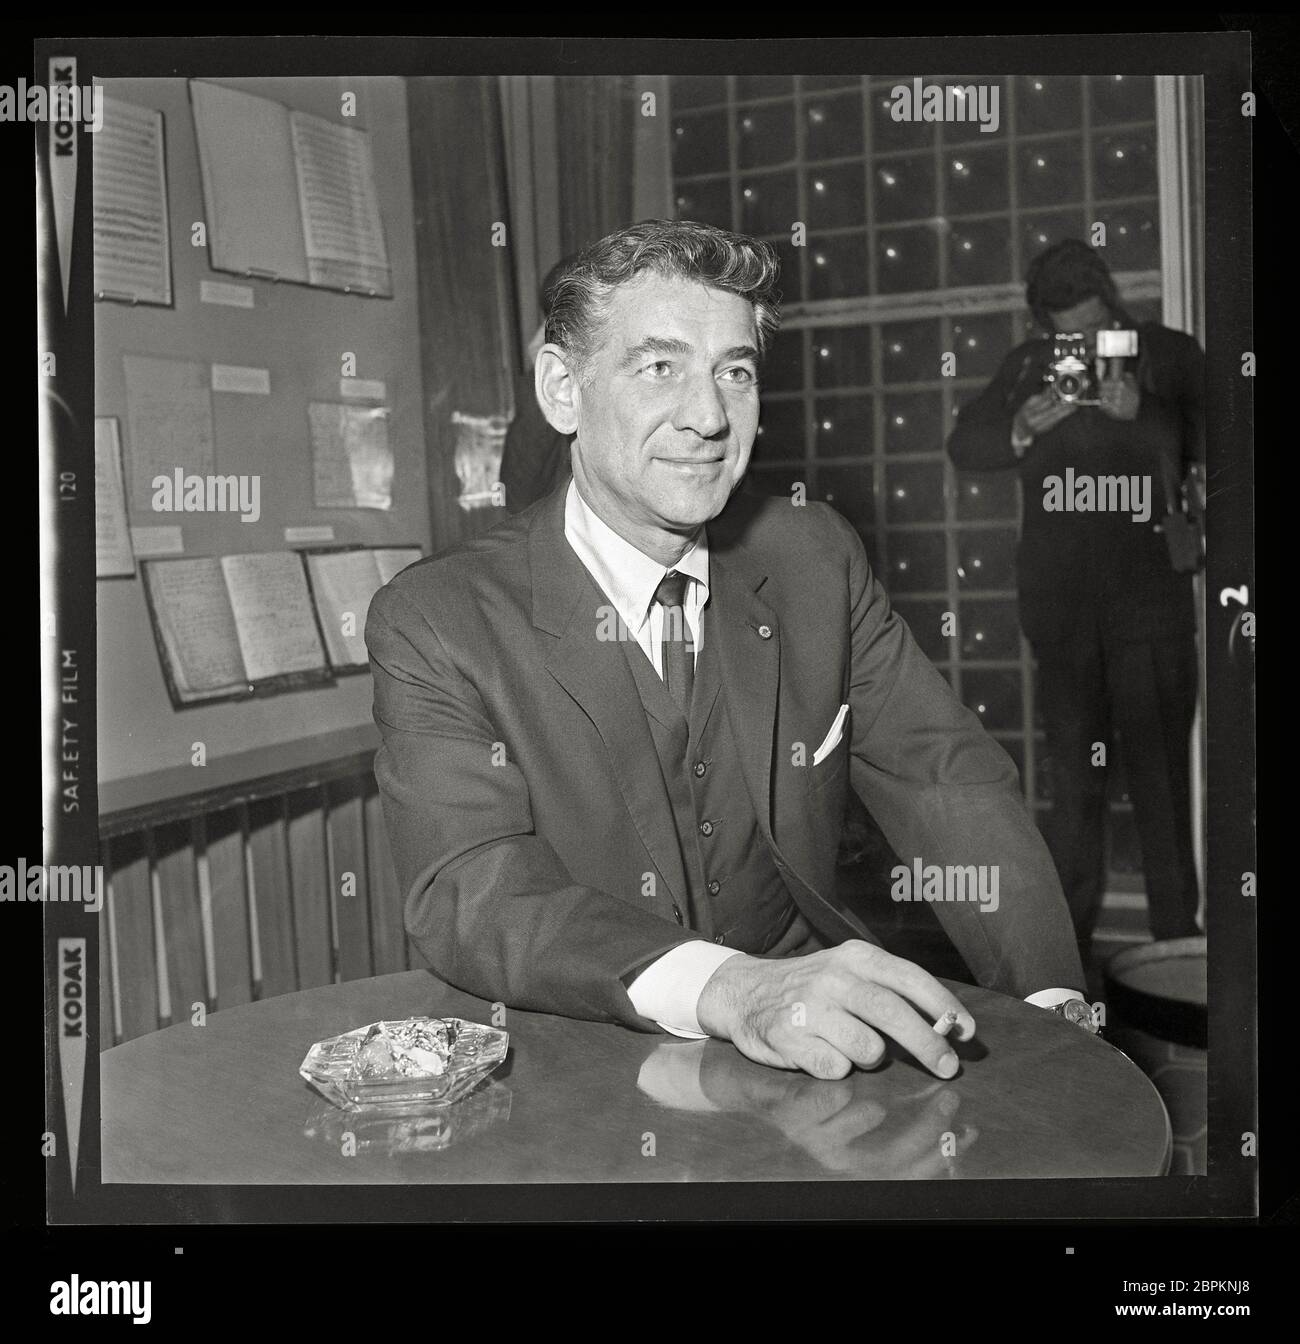 Il direttore e compositore americano Leonard Bernstein a Londra per partecipare a diversi concerti. Dietro le quinte del Royal Festival Hall. 11 febbraio 1963. Immagine da 2.25 x 2.25 pollici negativo. Foto Stock